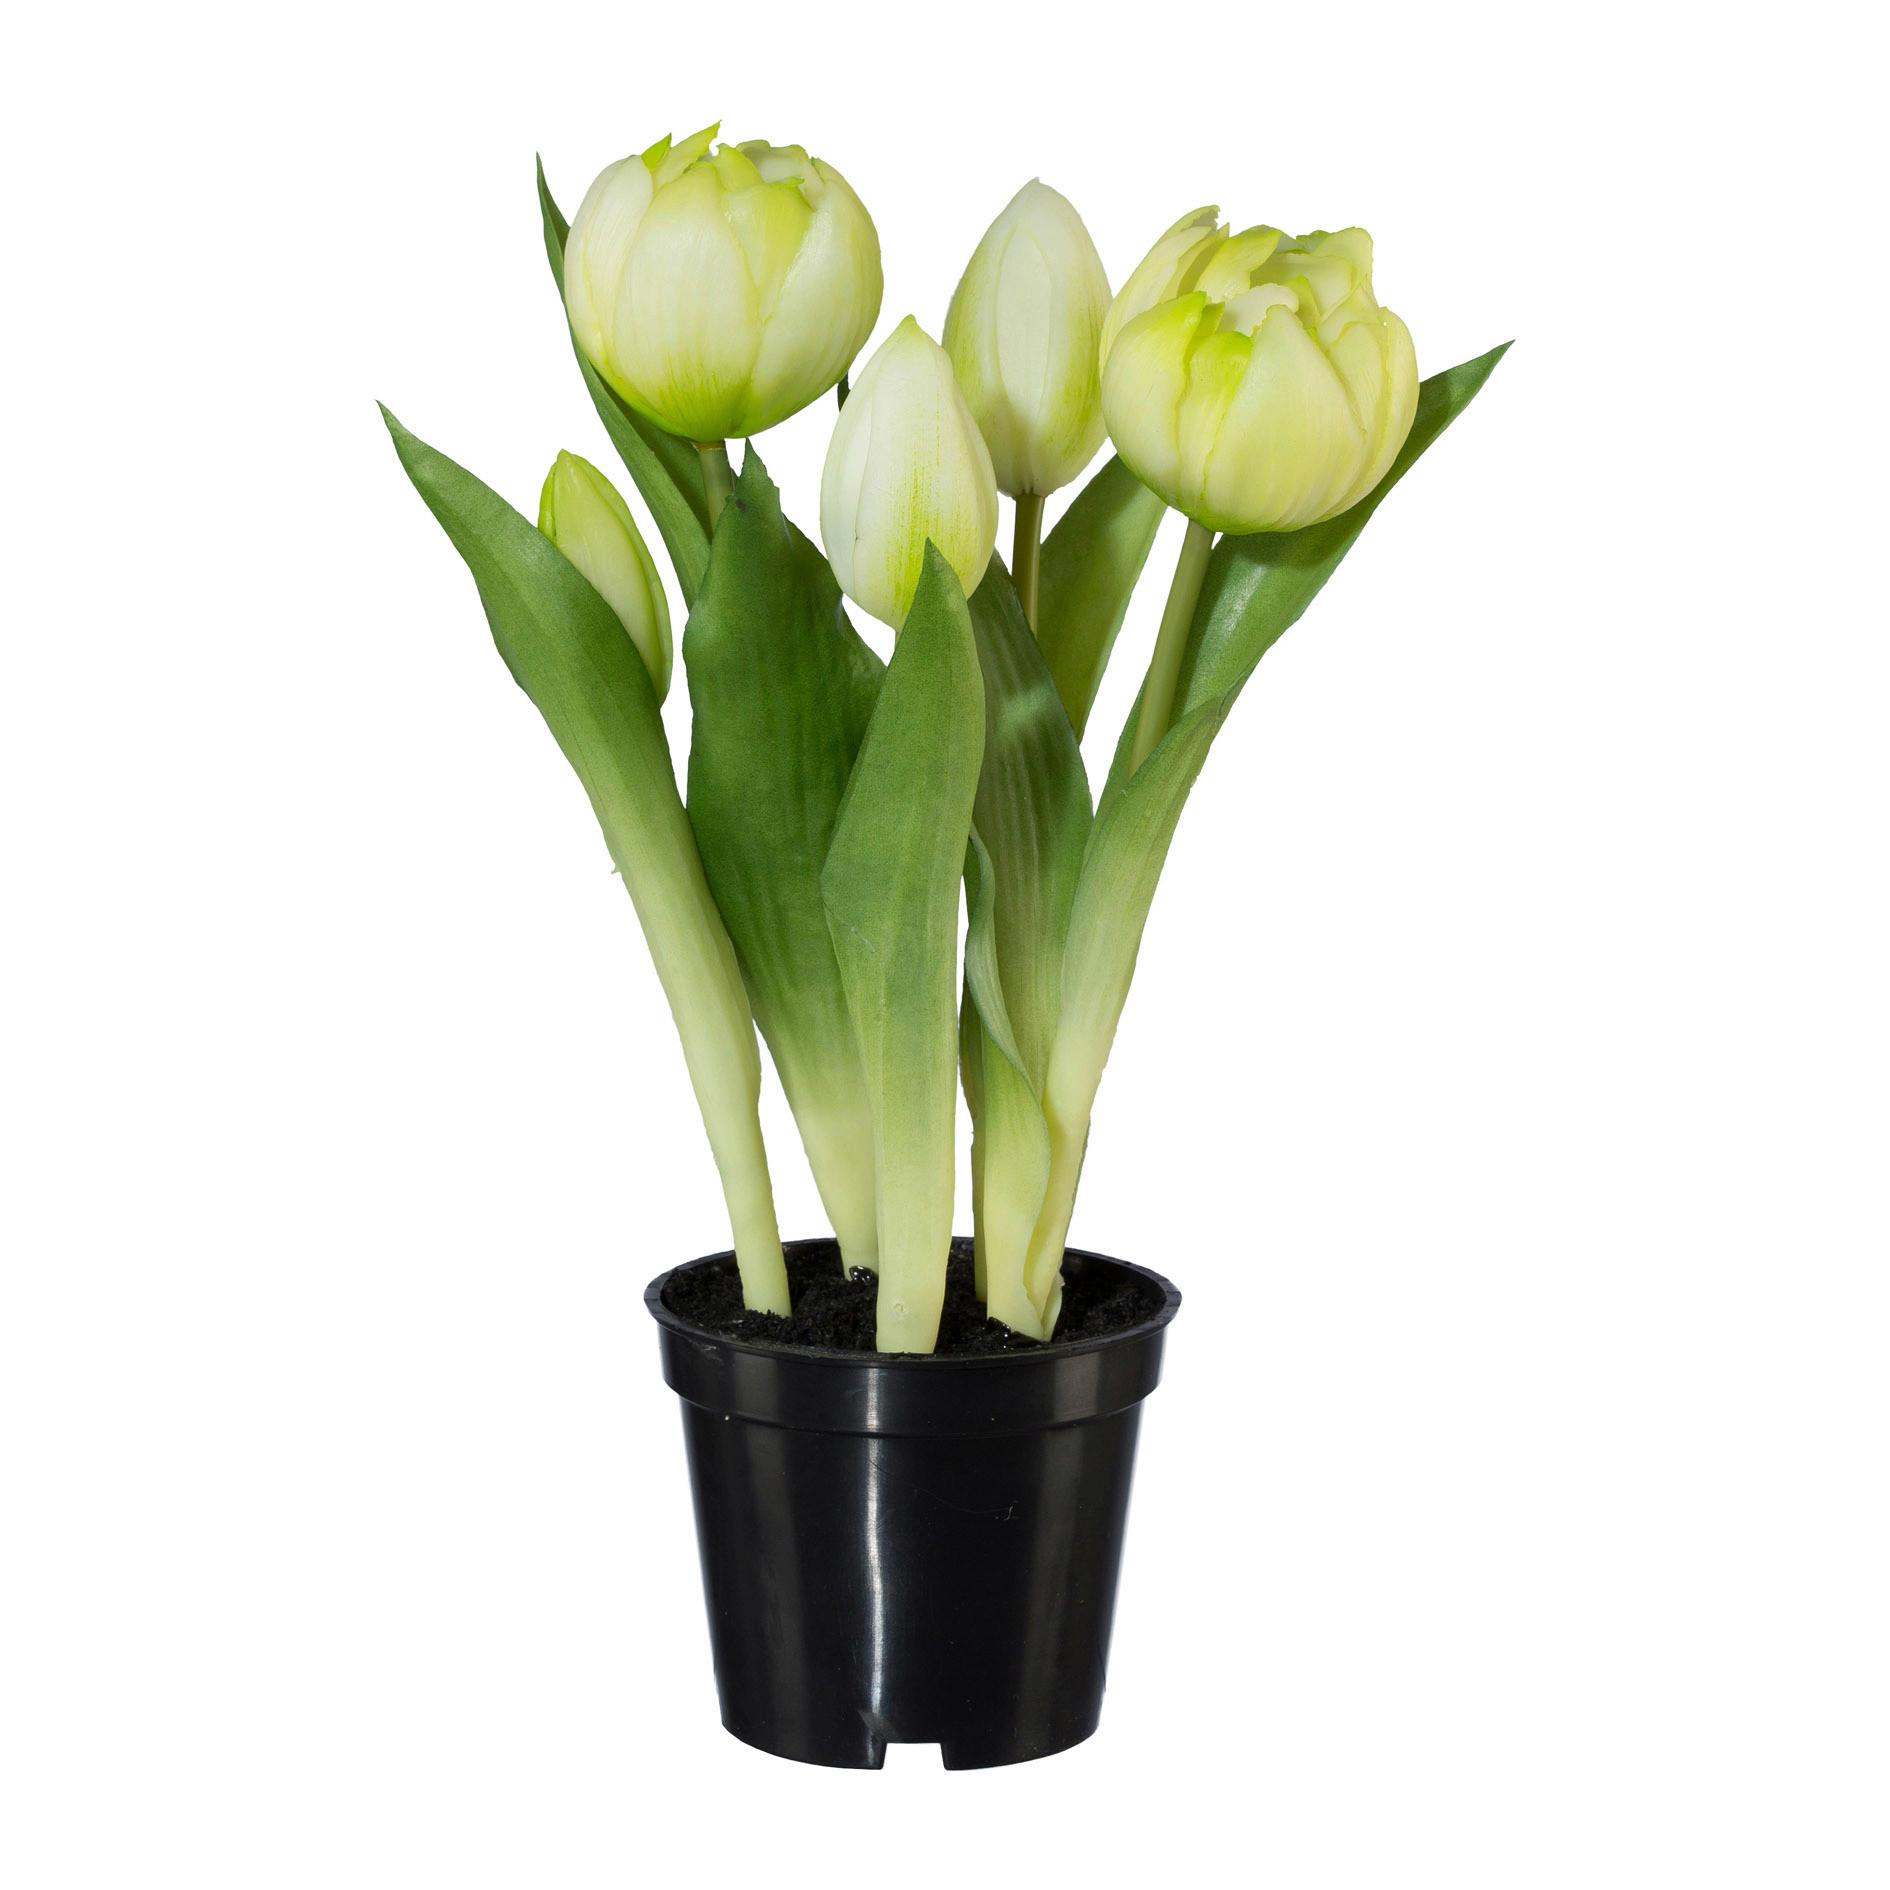 Kunstpflanze Tulpe I in Grün/Weiß - Schwarz/Weiß, Basics, Kunststoff (25cm) - Modern Living